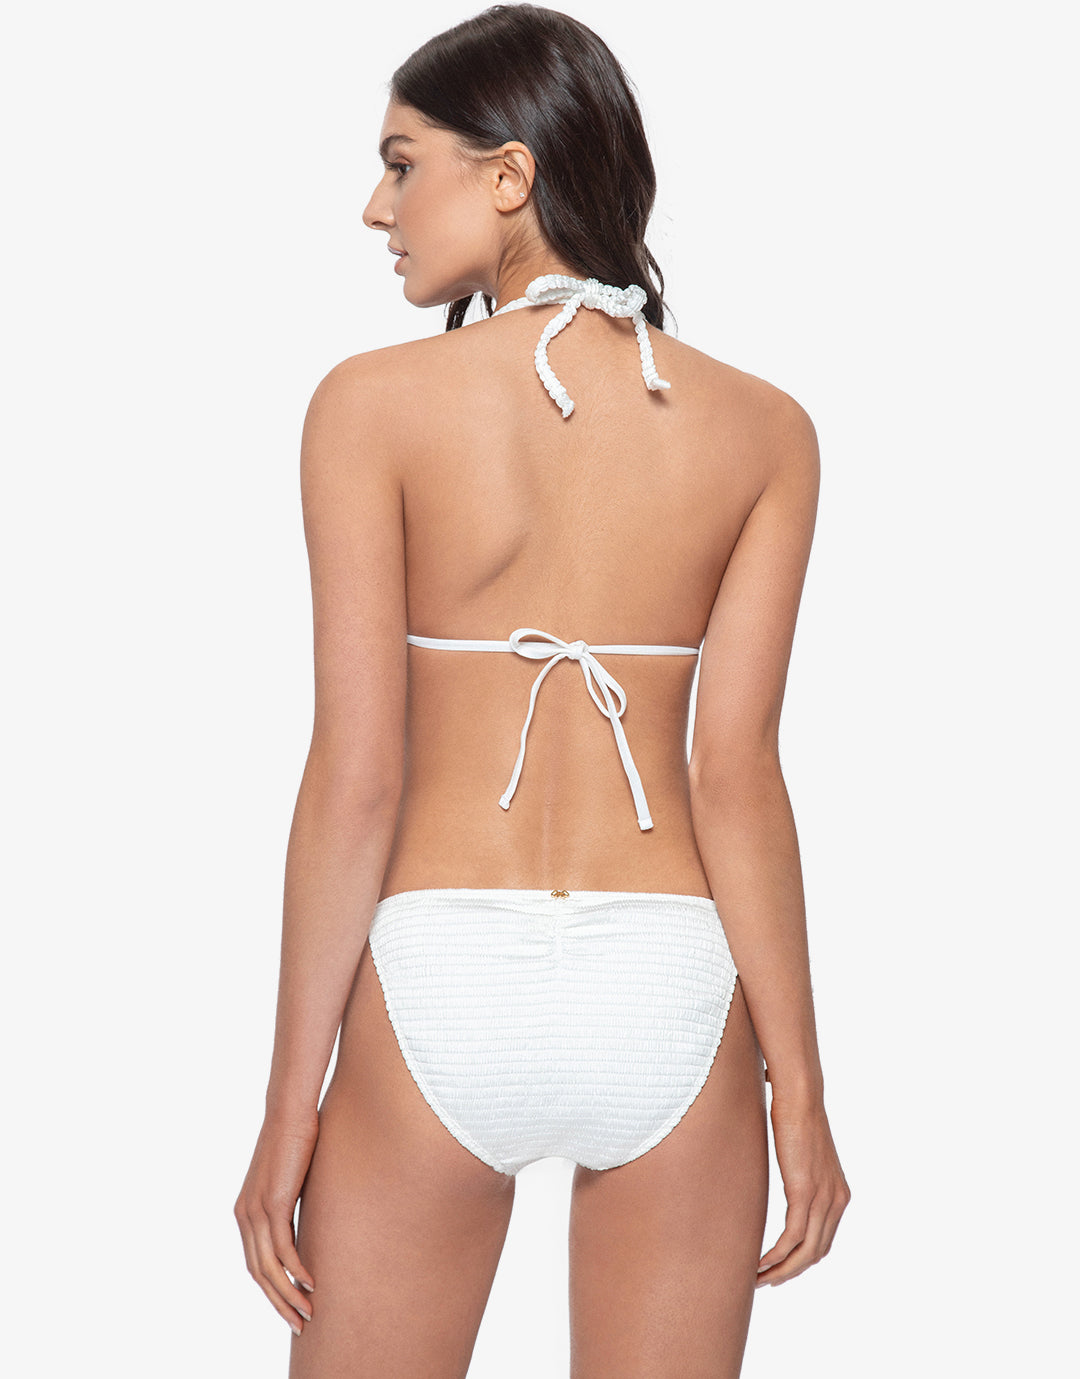 Pure Detail Tri Bikini Top - White - Simply Beach UK